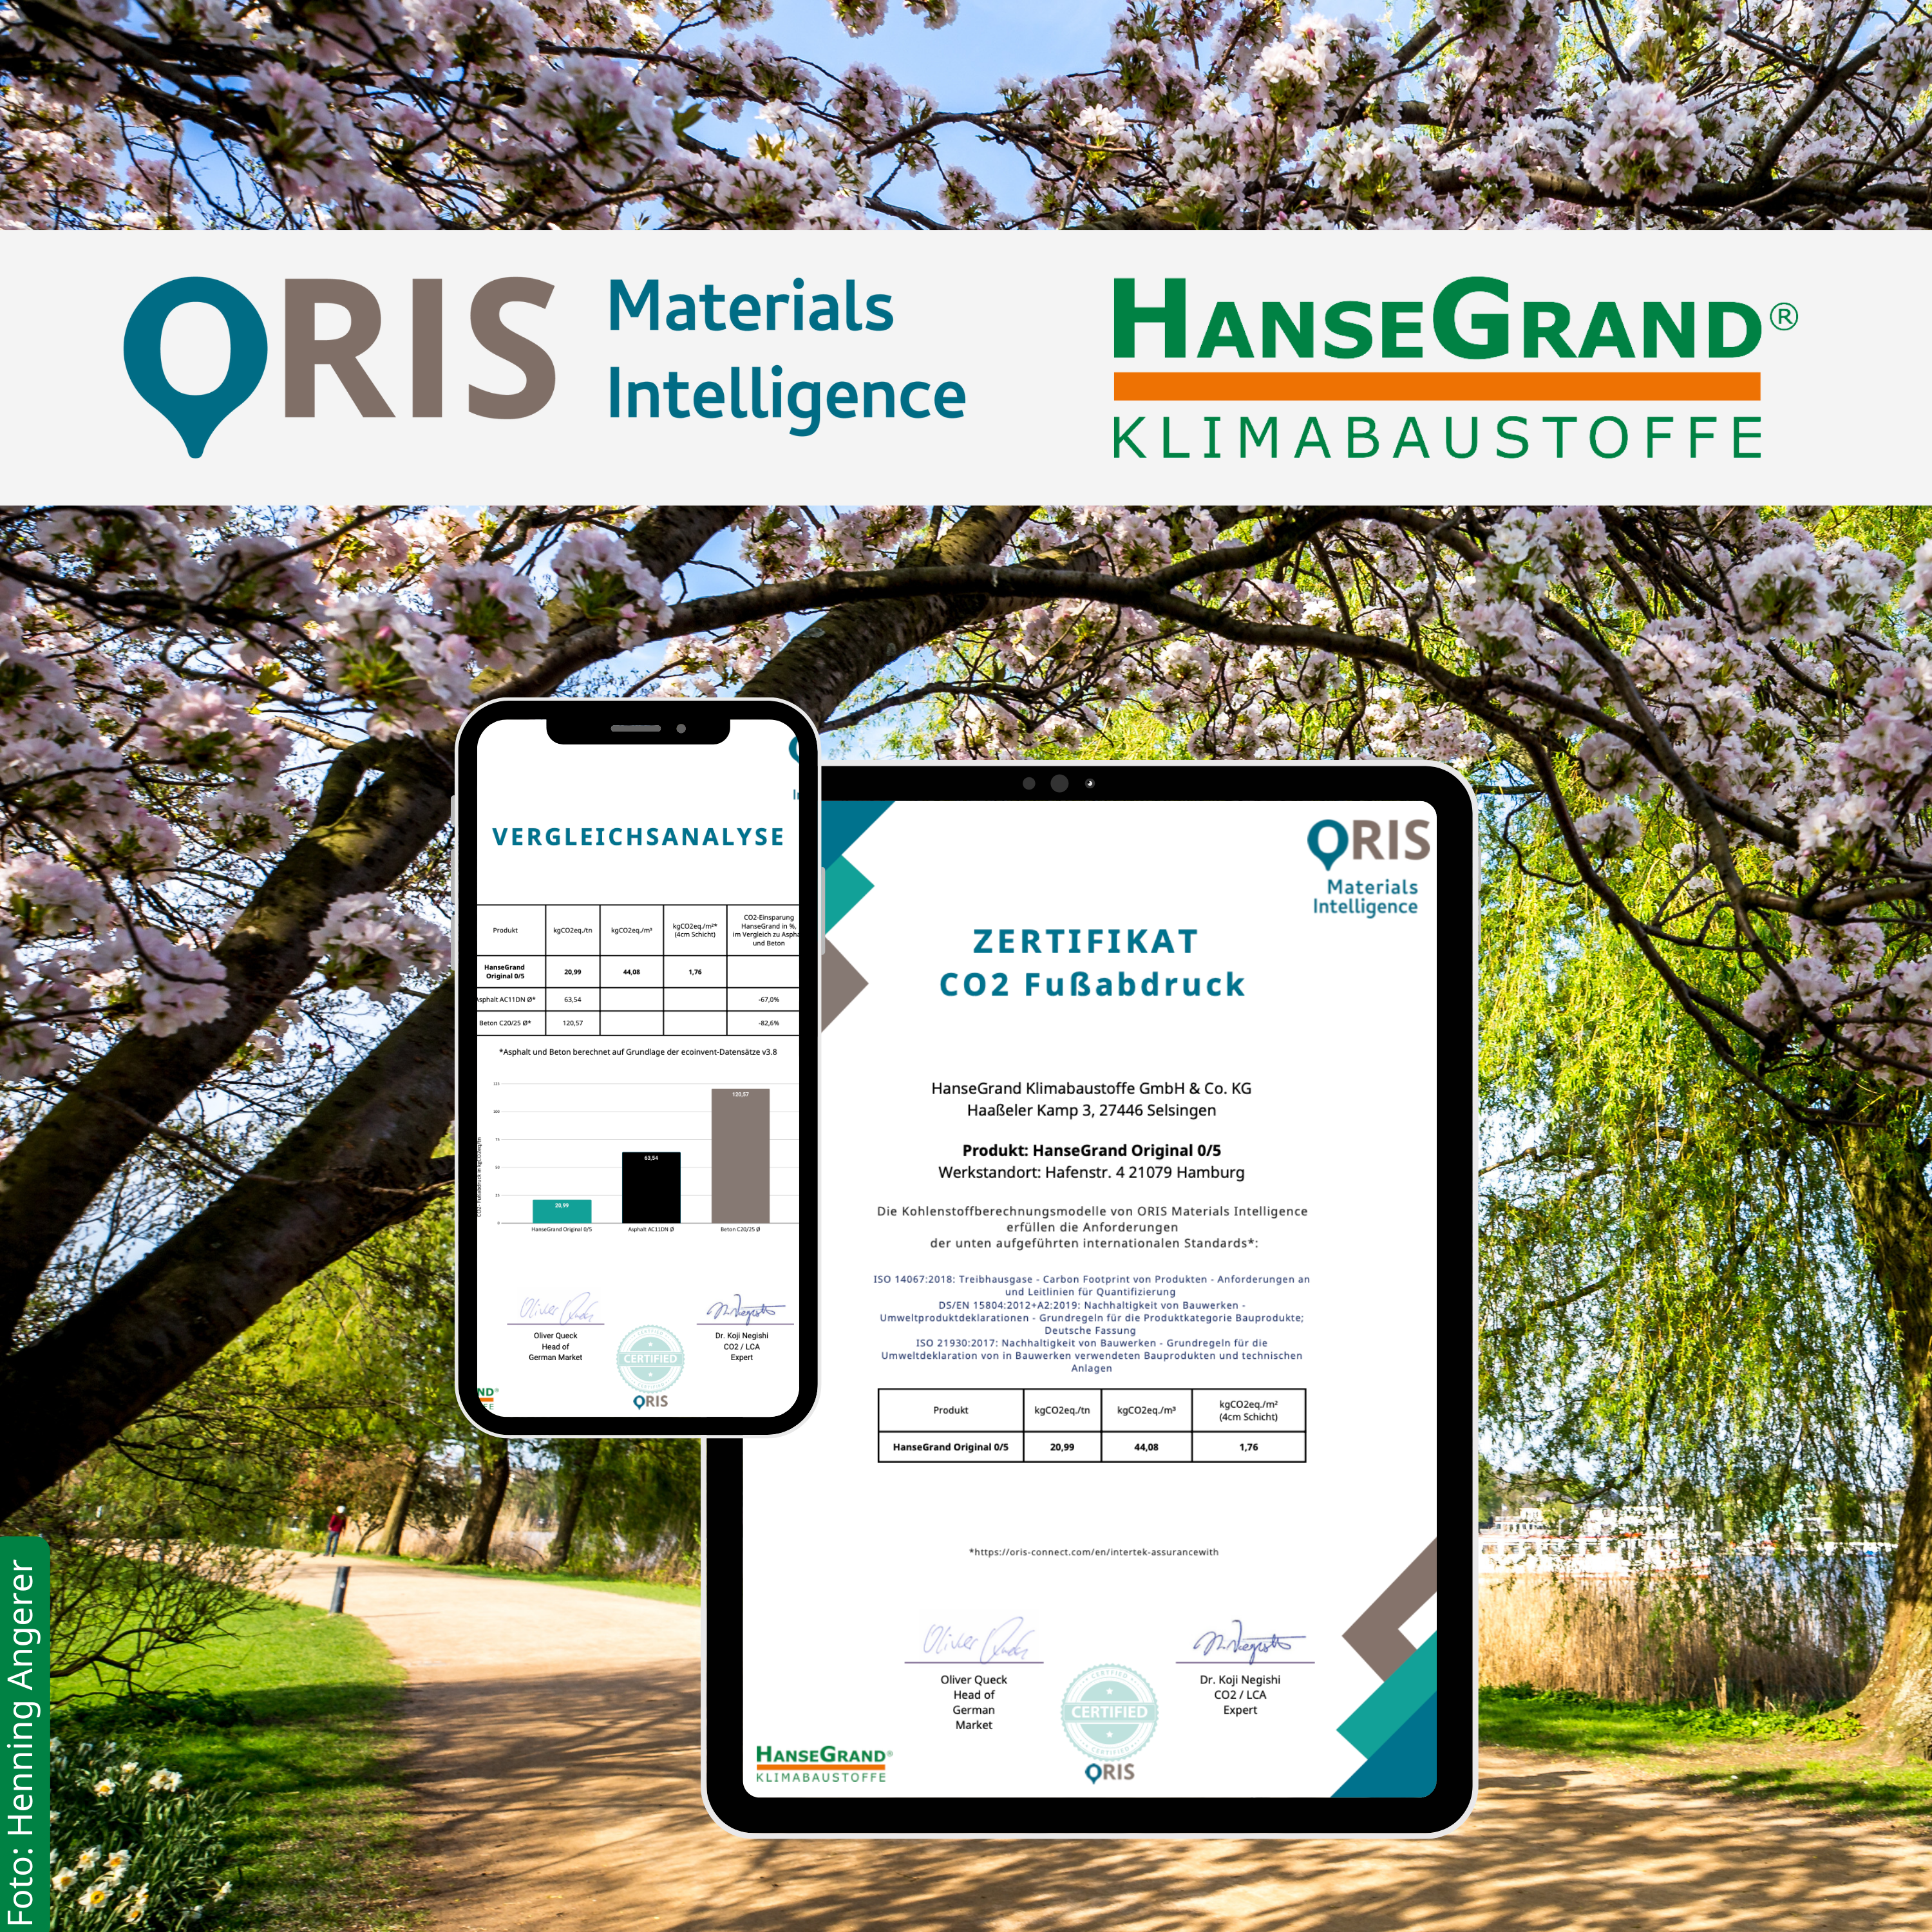 Wegedecken von HanseGrand: pflegeleicht, witterungsbeständig, langlebig und jetzt auch durch ORIS Materials Intelligence CO2-zertifiziert!